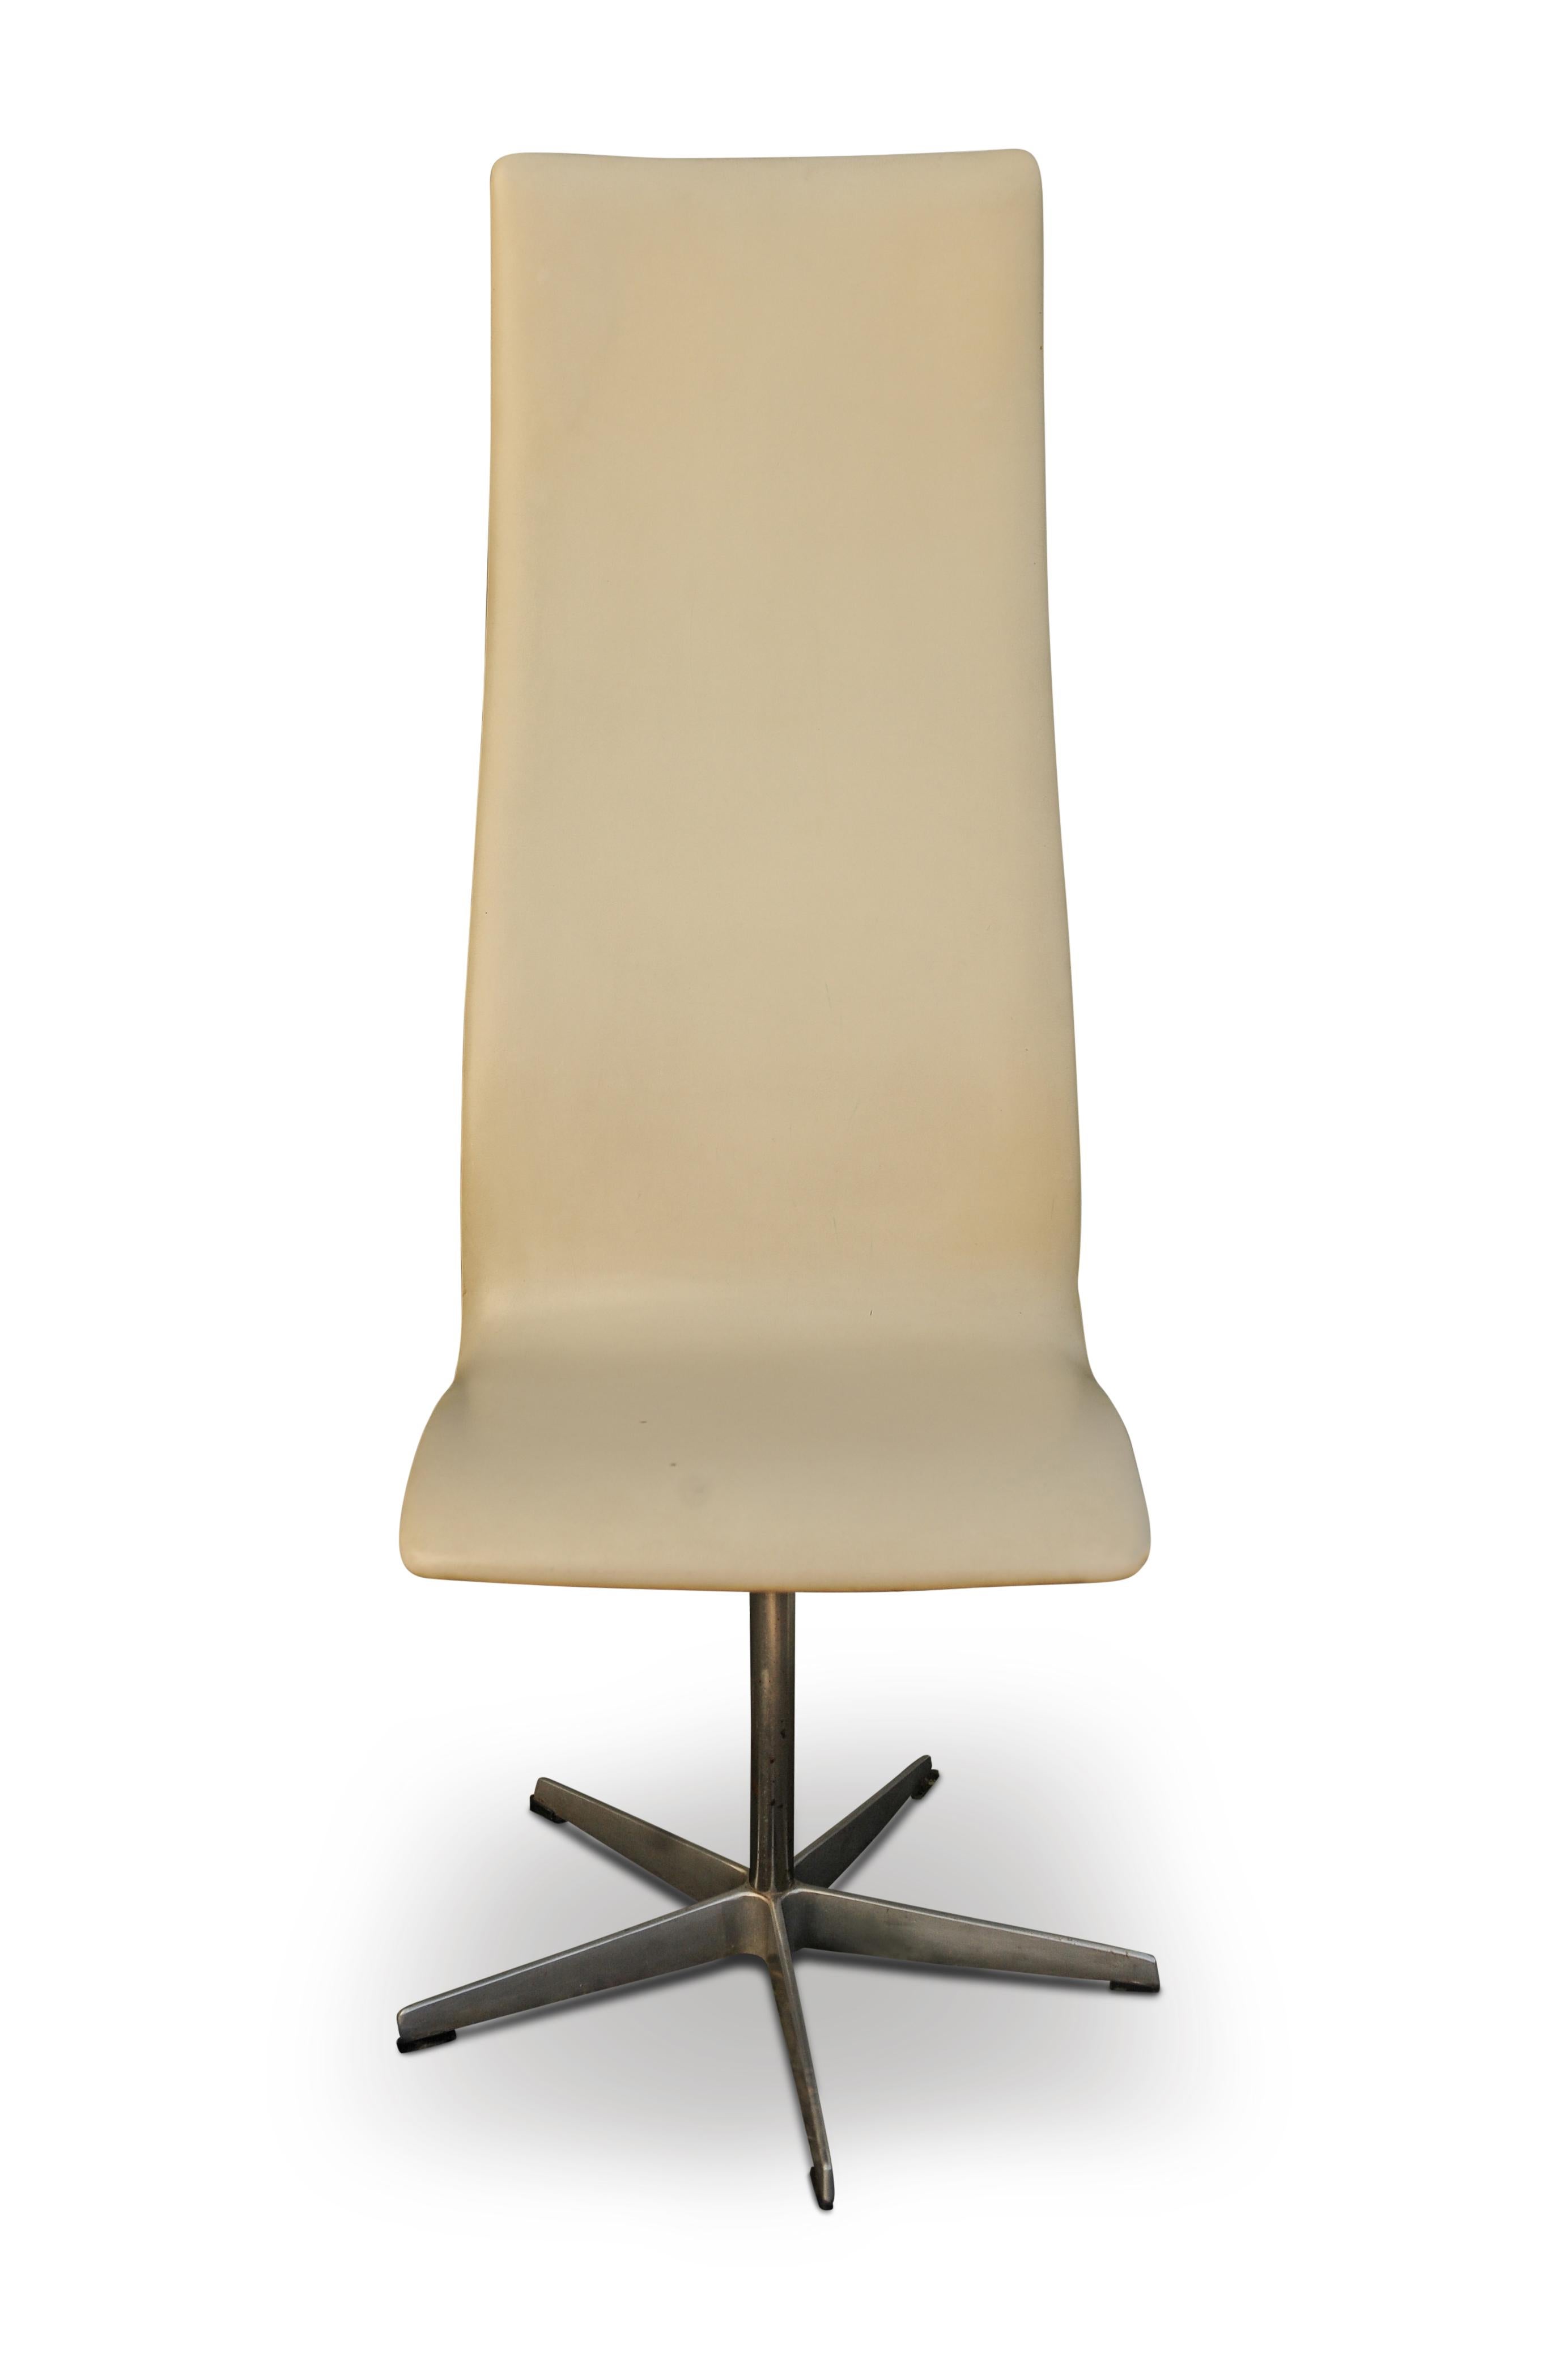 Design original d'Arne Jacobsen (1902-1971) pour Fritz Hansen.
Chaise d'Oxford pivotante d'origine en cuir blanc cassé et cadre en aluminium brossé, avec rembourrage en cuir crème, reposant sur une base à cinq branches, étiquetée sur le